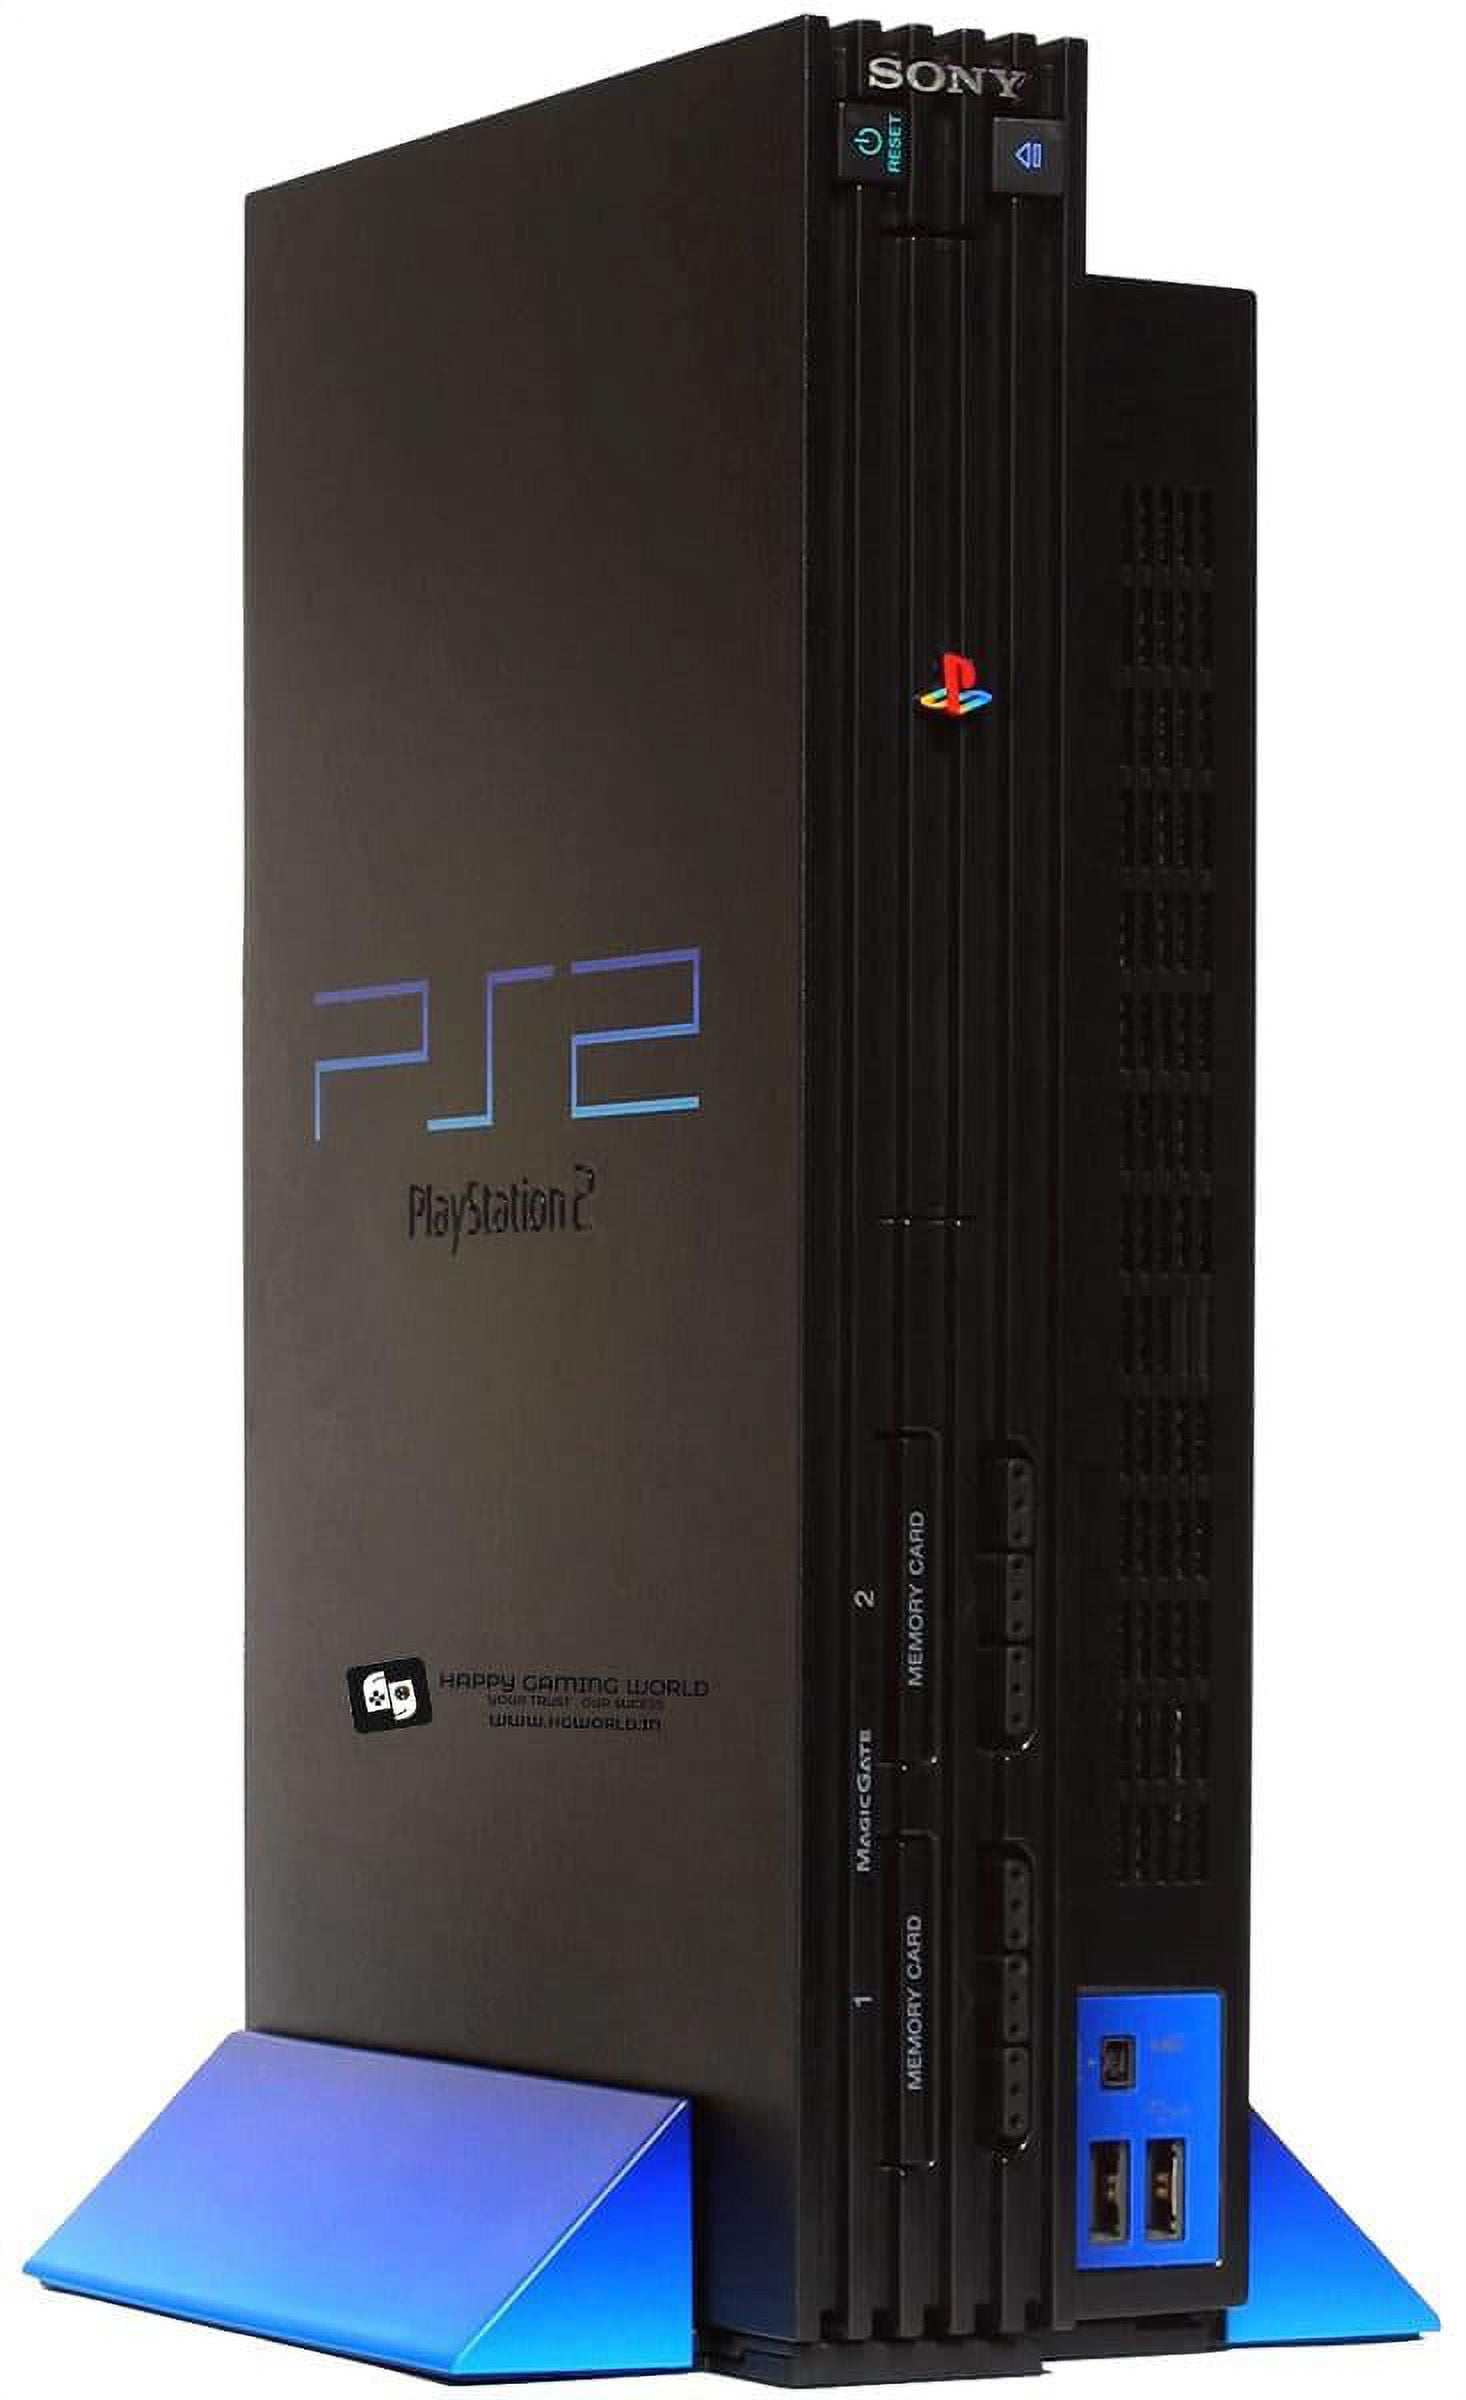 Sony PlayStation 2 Console - Black vídeo juego(Reacondicionado) :  : Videojuegos